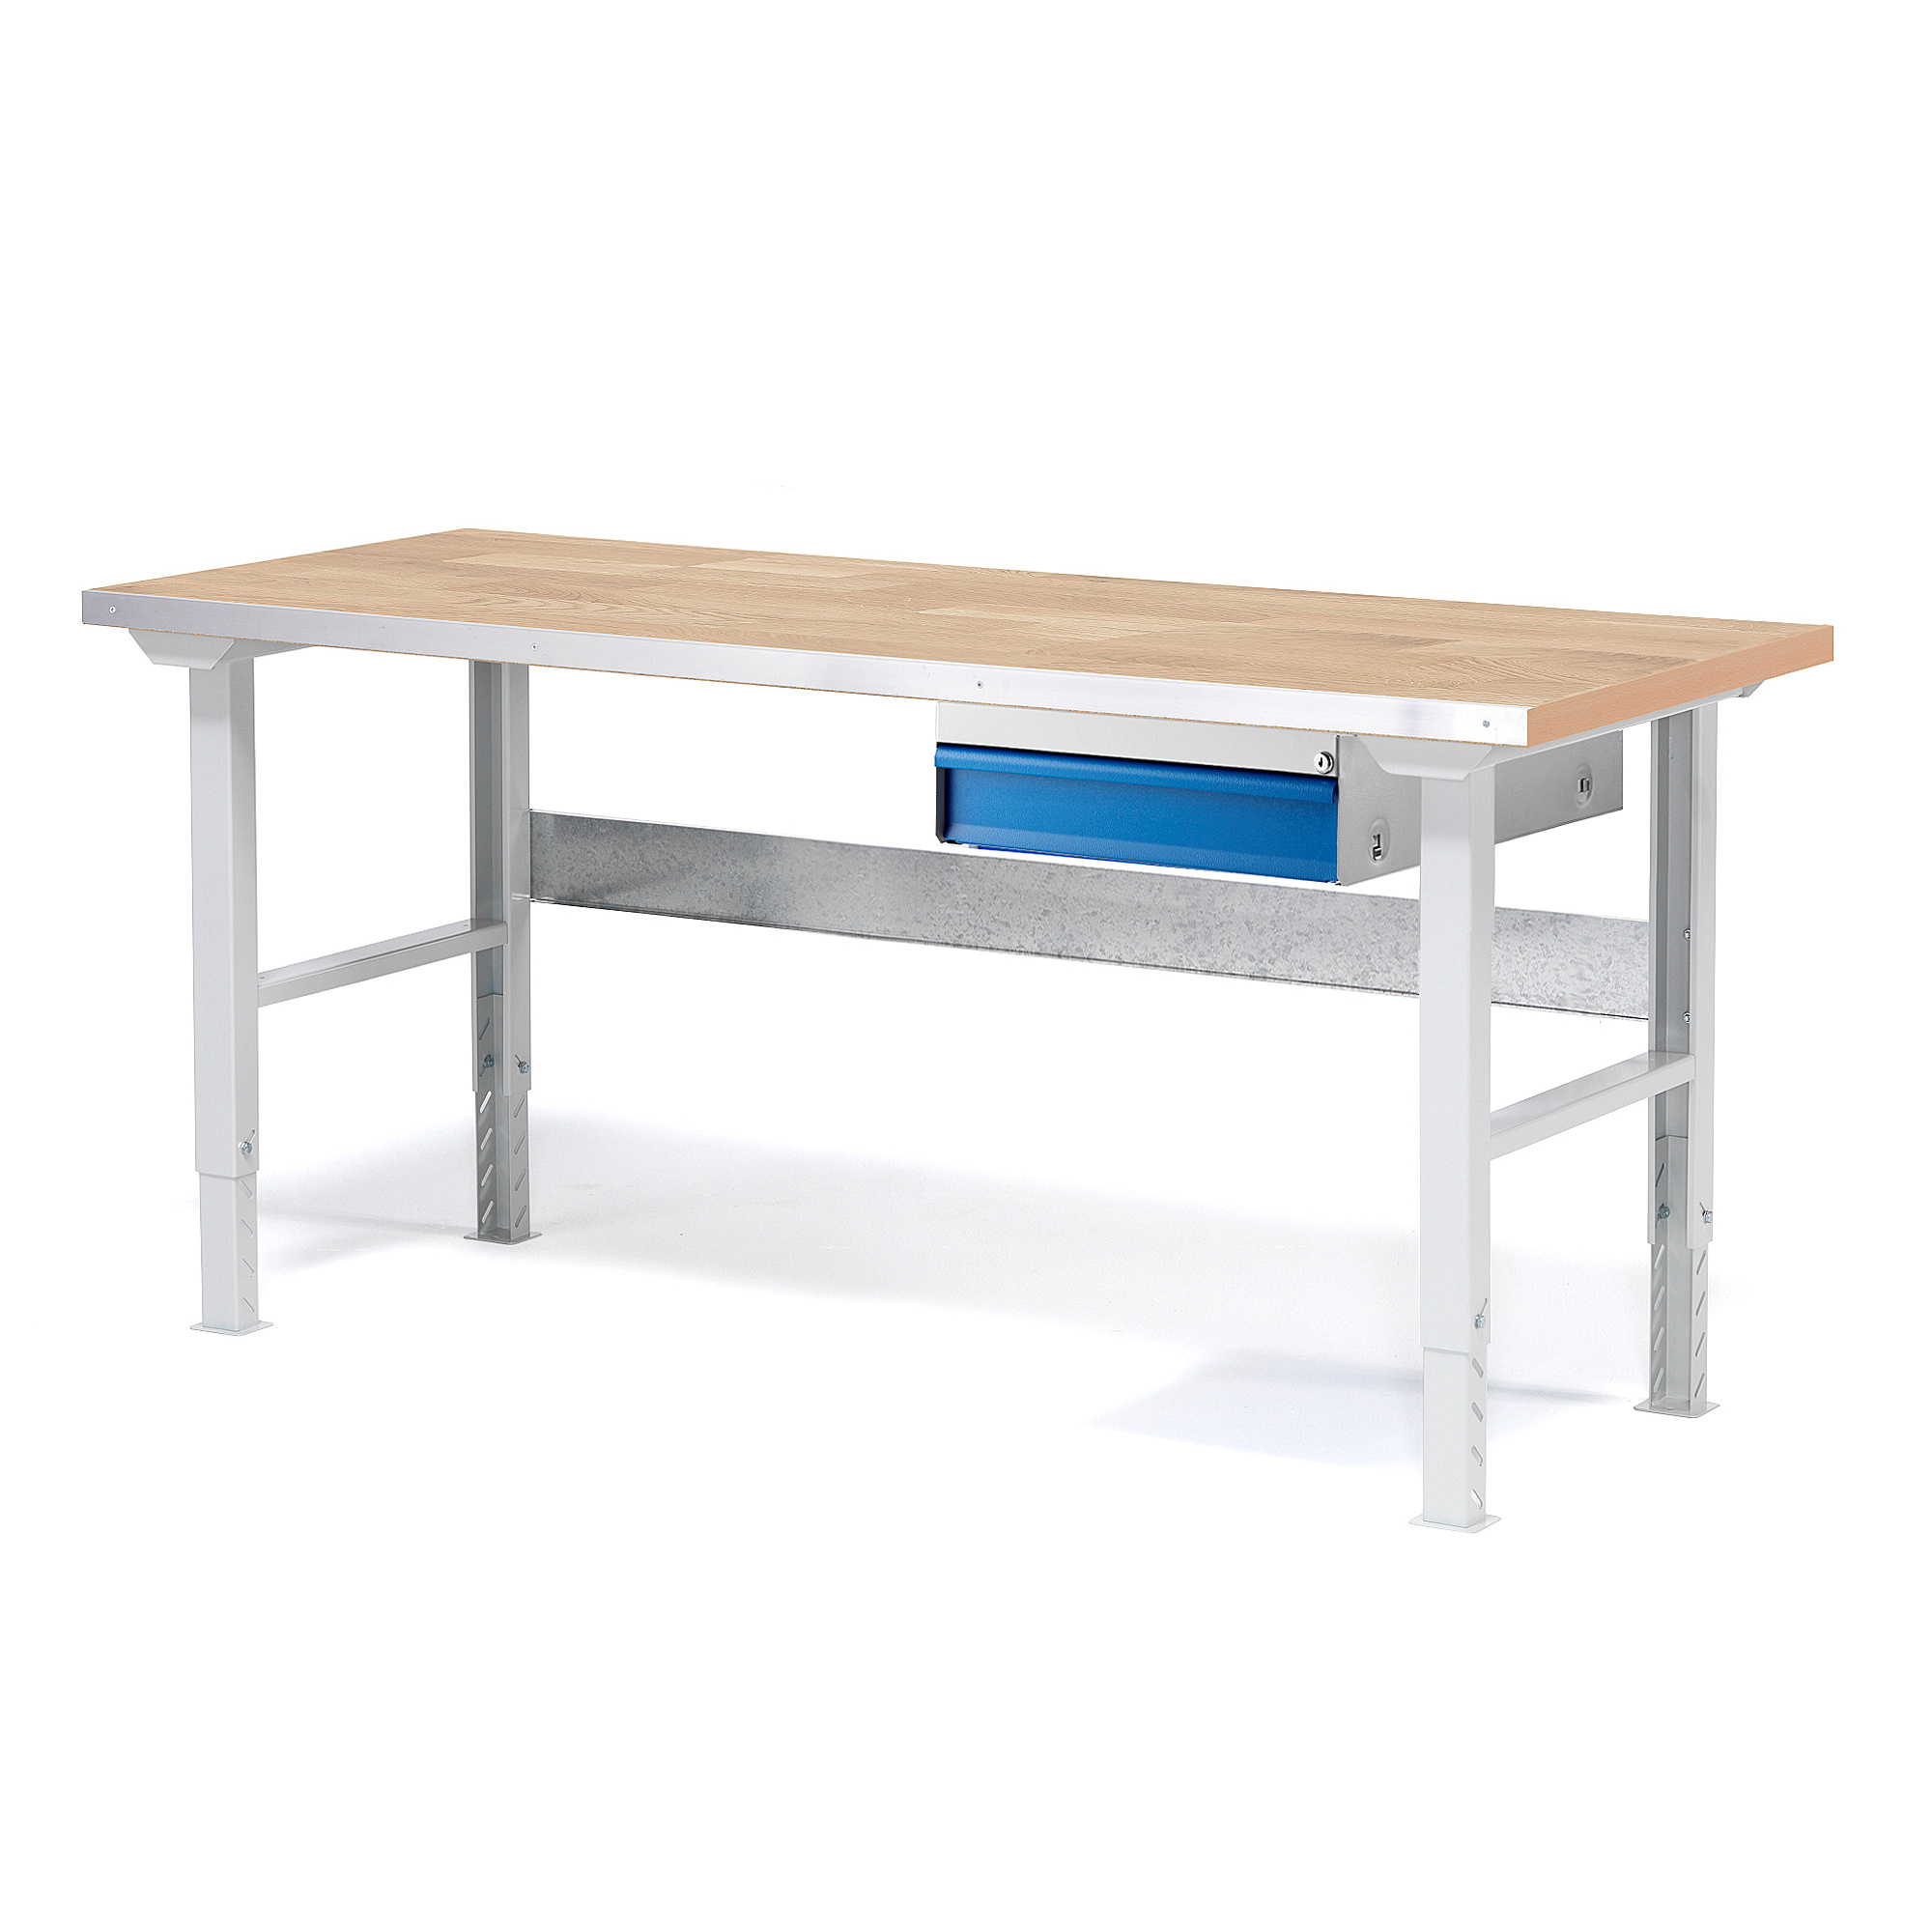 Dílenský stůl SOLID, 1500x800 mm, nosnost 750 kg, 1 zásuvka, dubový povrch